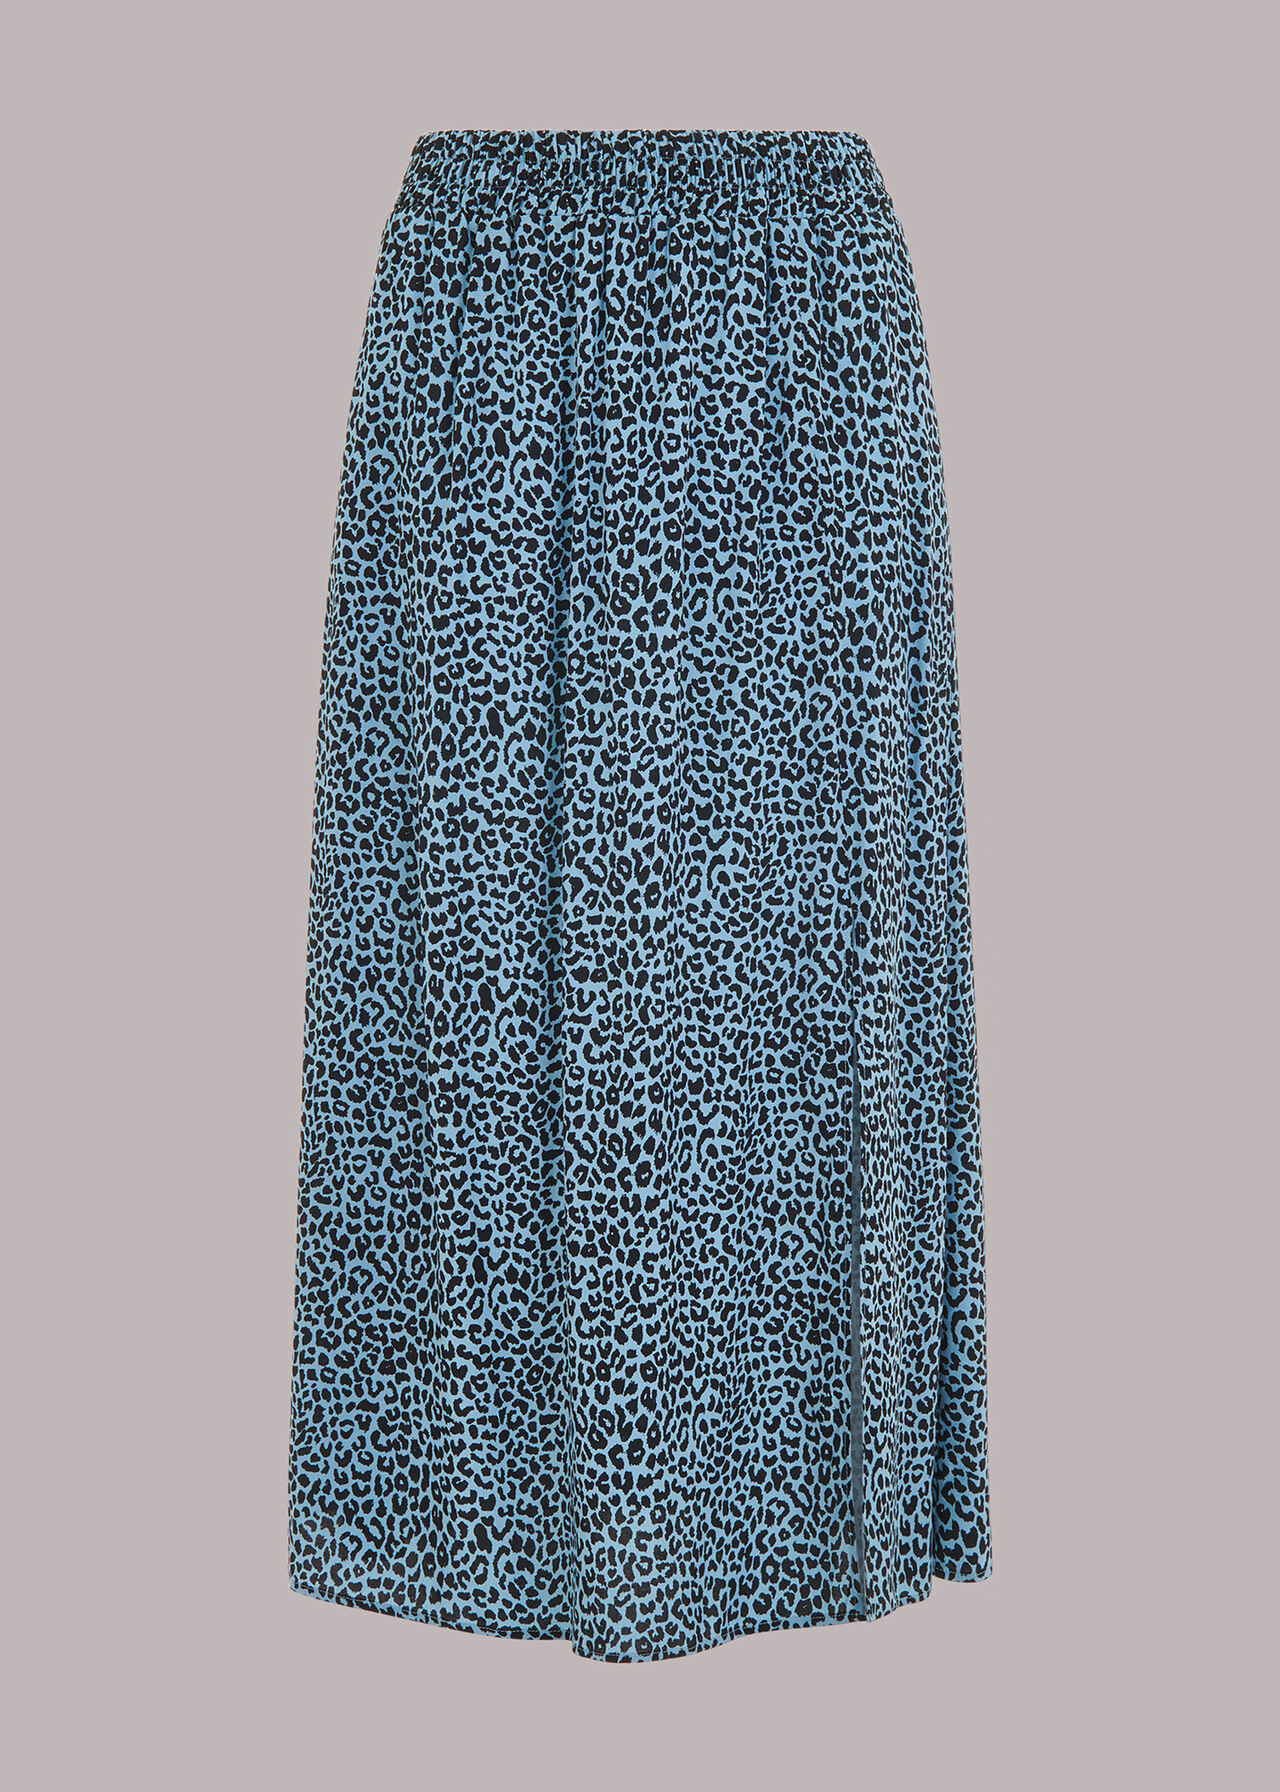 Blue/Multi Contrast Leopard Skirt | WHISTLES